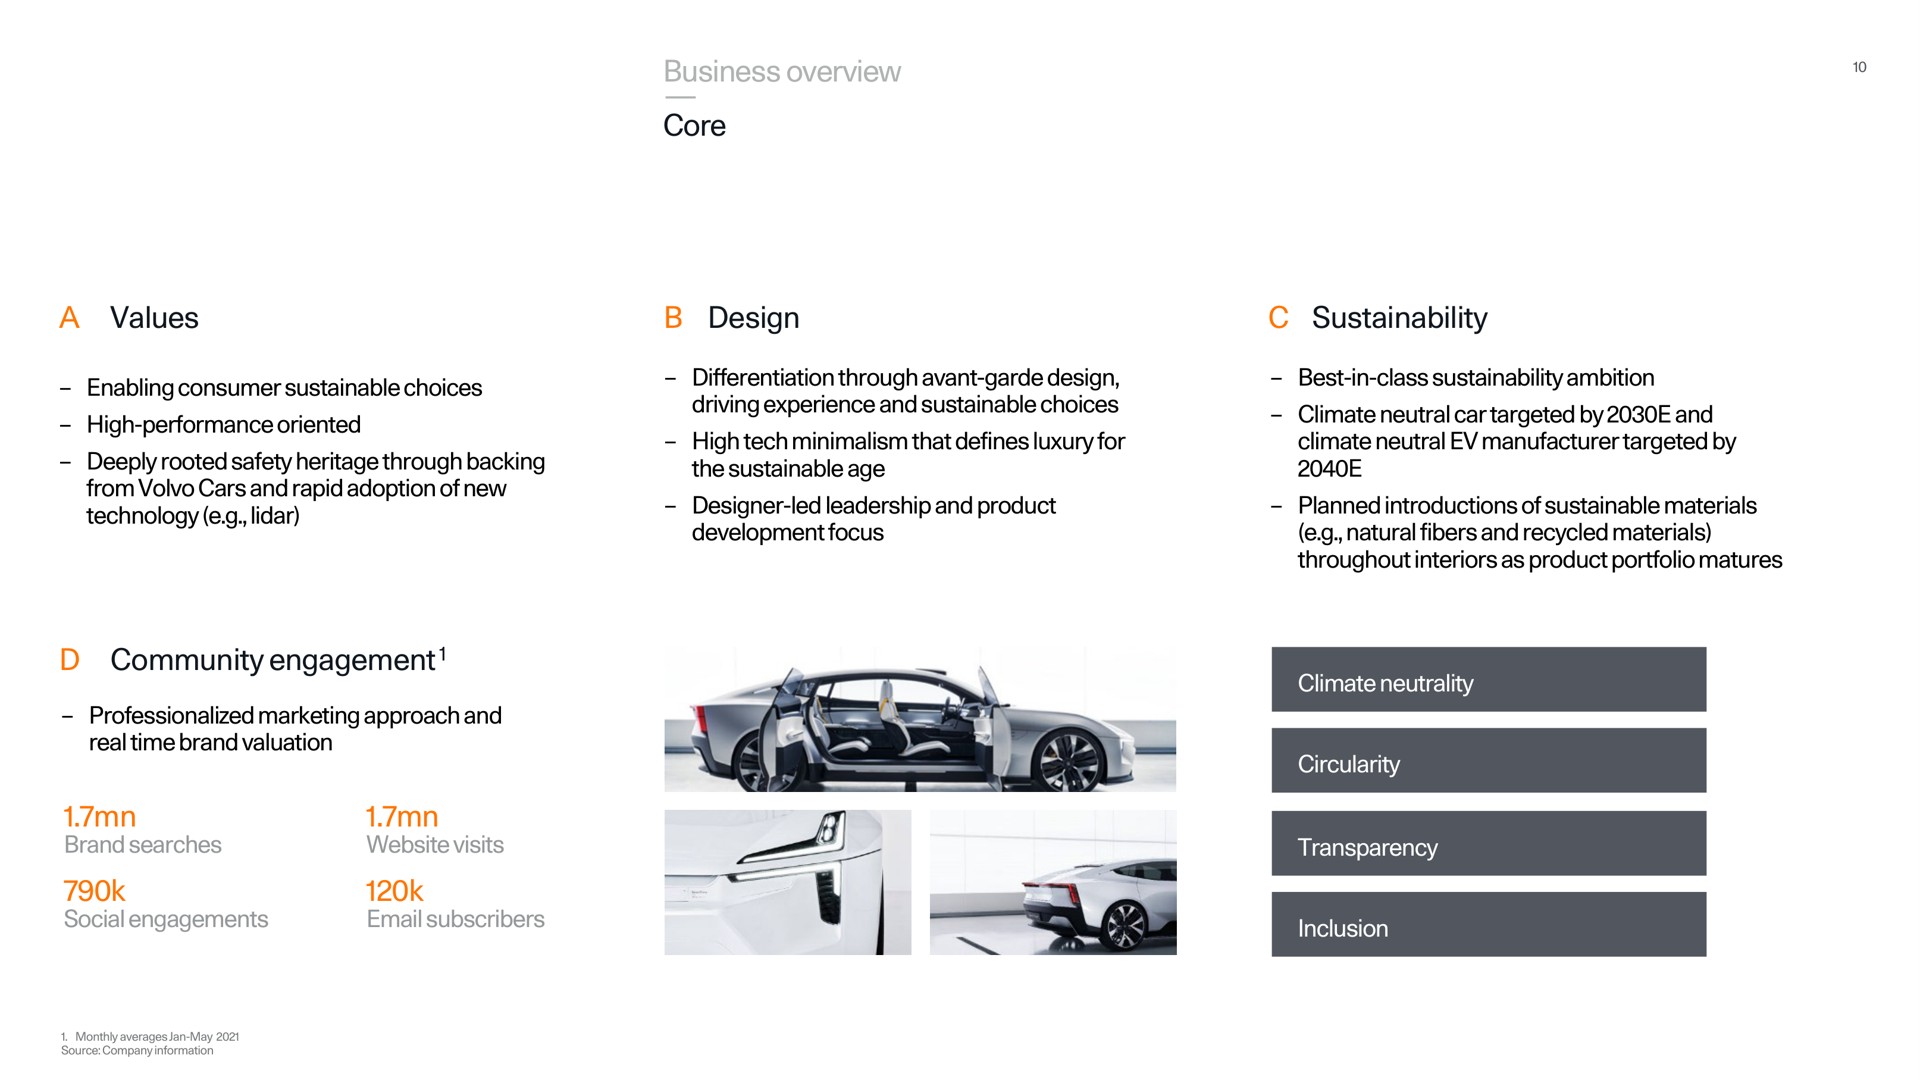 business overview core a values design community engagement | Polestar